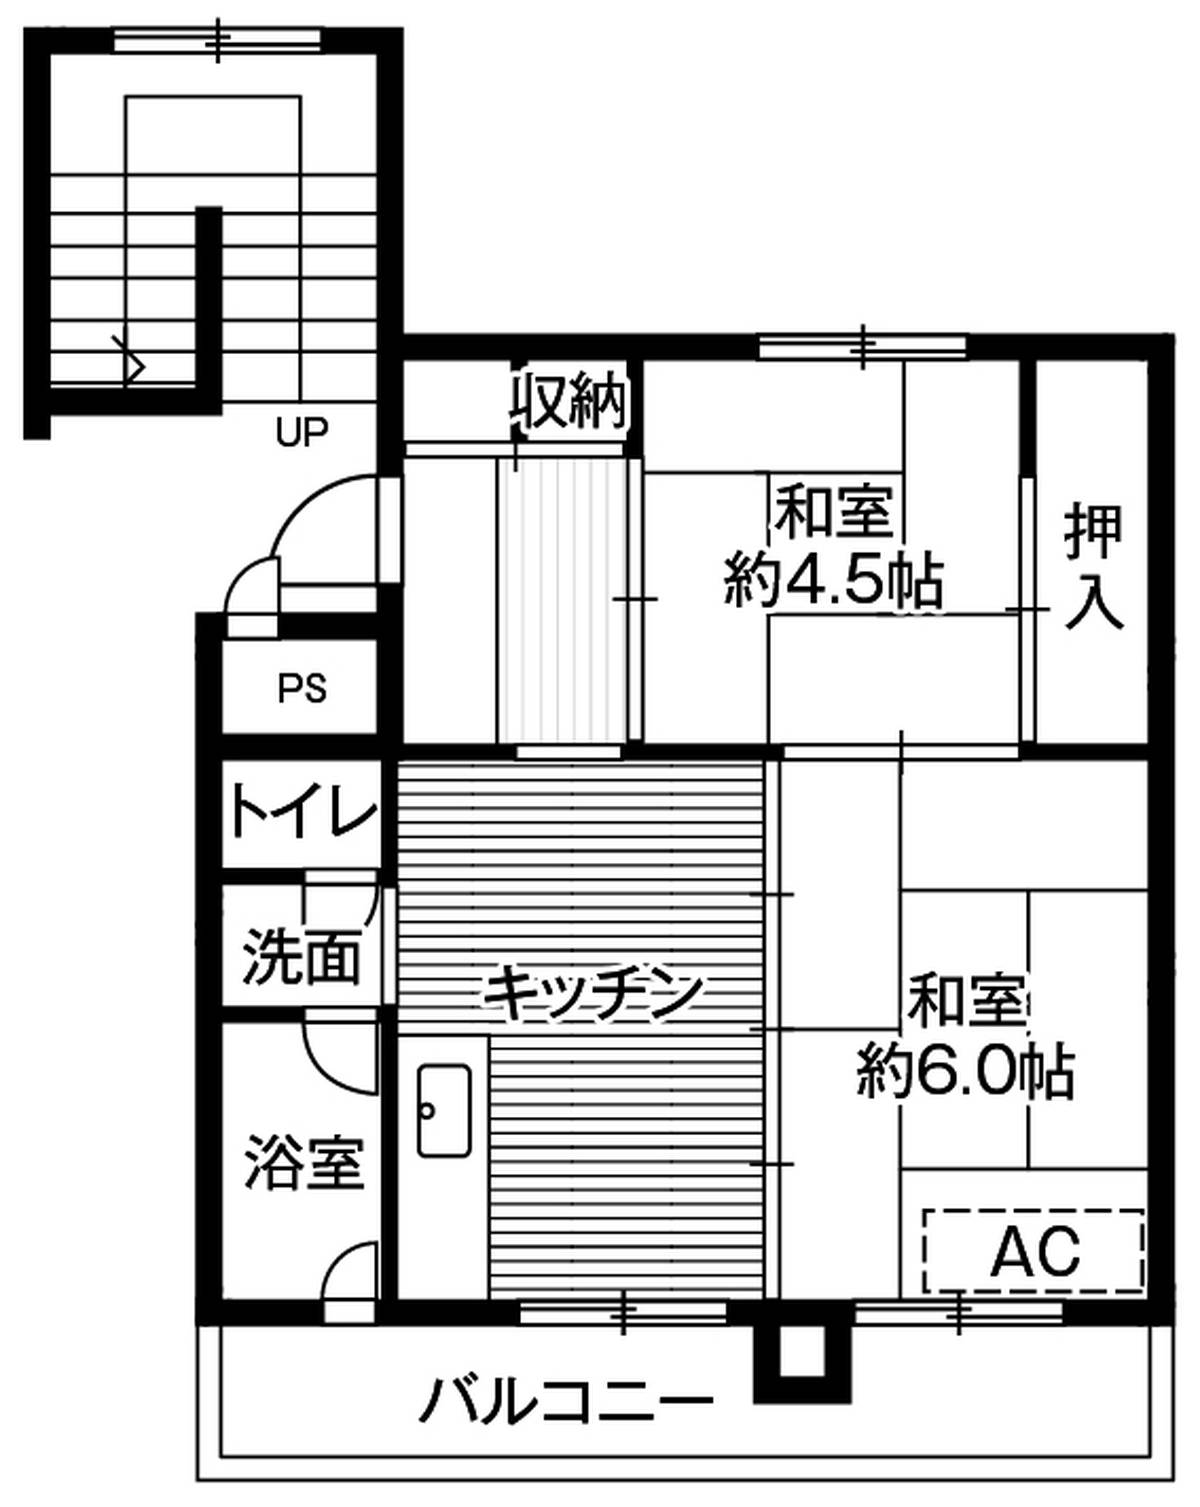 位于岩見沢市的Village House 栗沢的平面图2DK